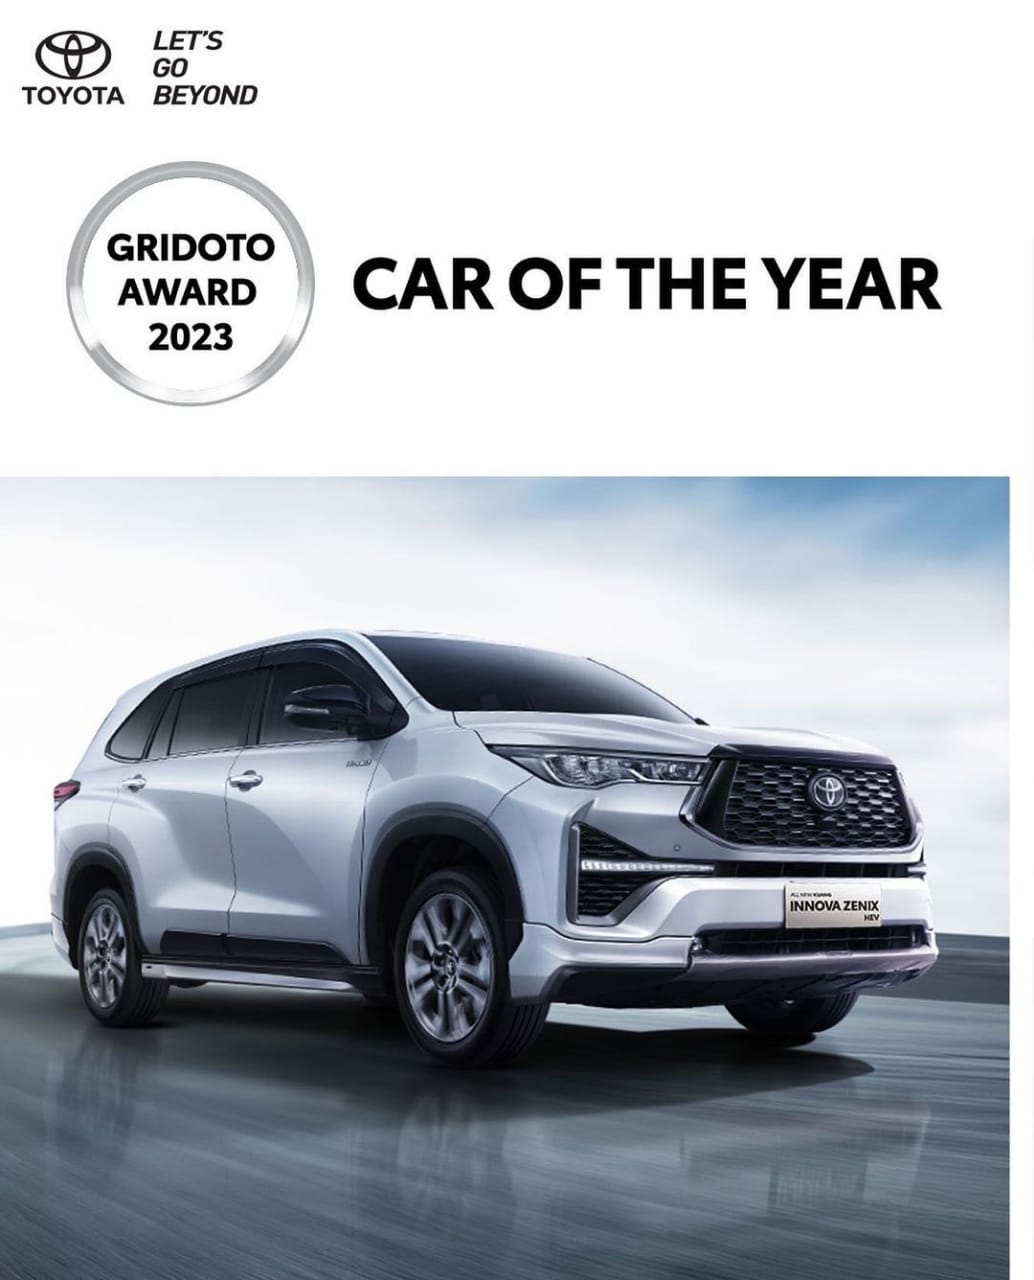 All New Kijang Innova Zenix berhasil meraih penghargaan kategori Car of The Year pada GridOto Award 